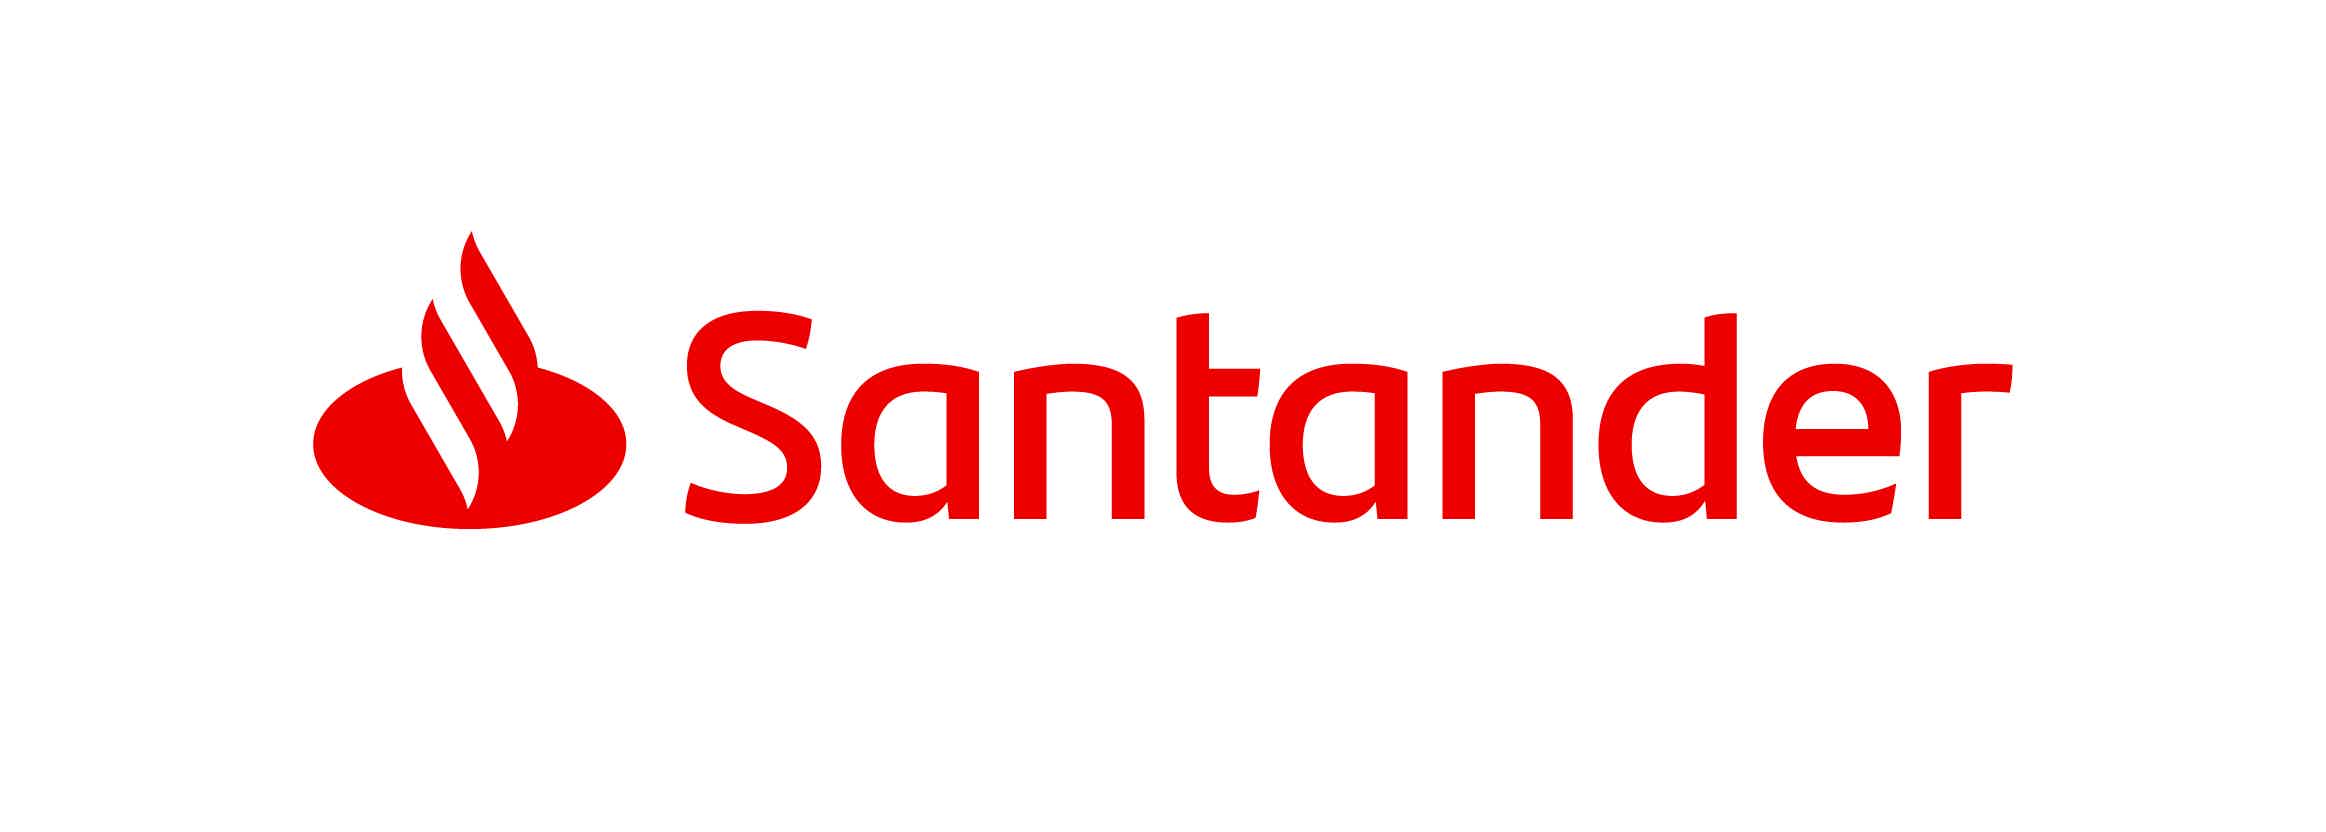 O consórcio imobiliário Santander é mais um dos inúmeros serviços que o banco oferece visando facilitar a vida de seus clientes. Fonte: Santander.